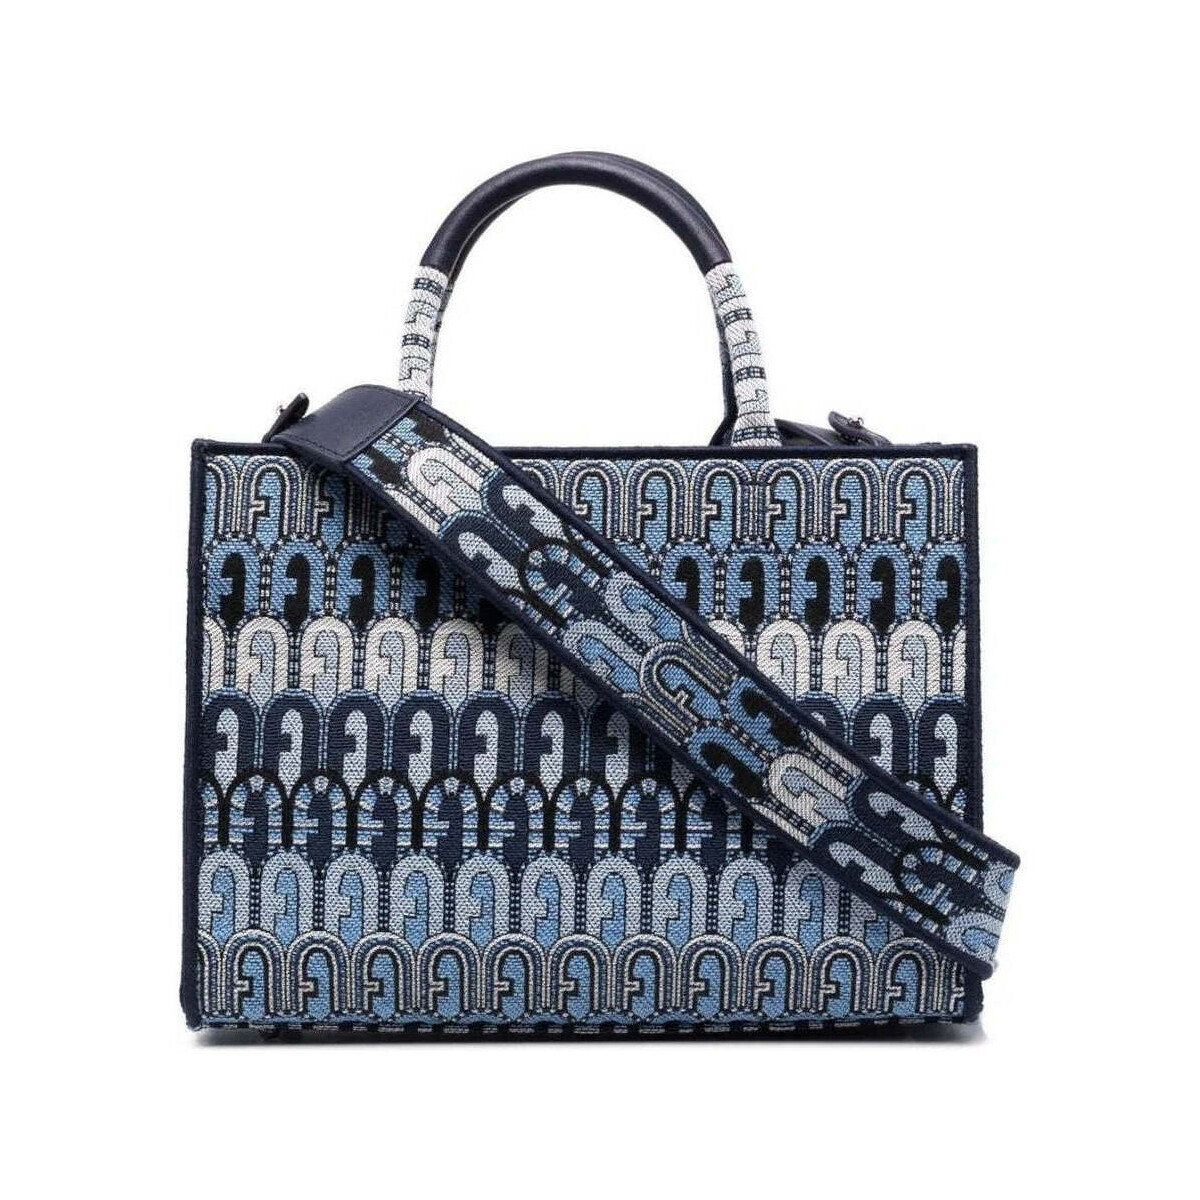 Taschen Damen Shopper / Einkaufstasche Furla  Blau